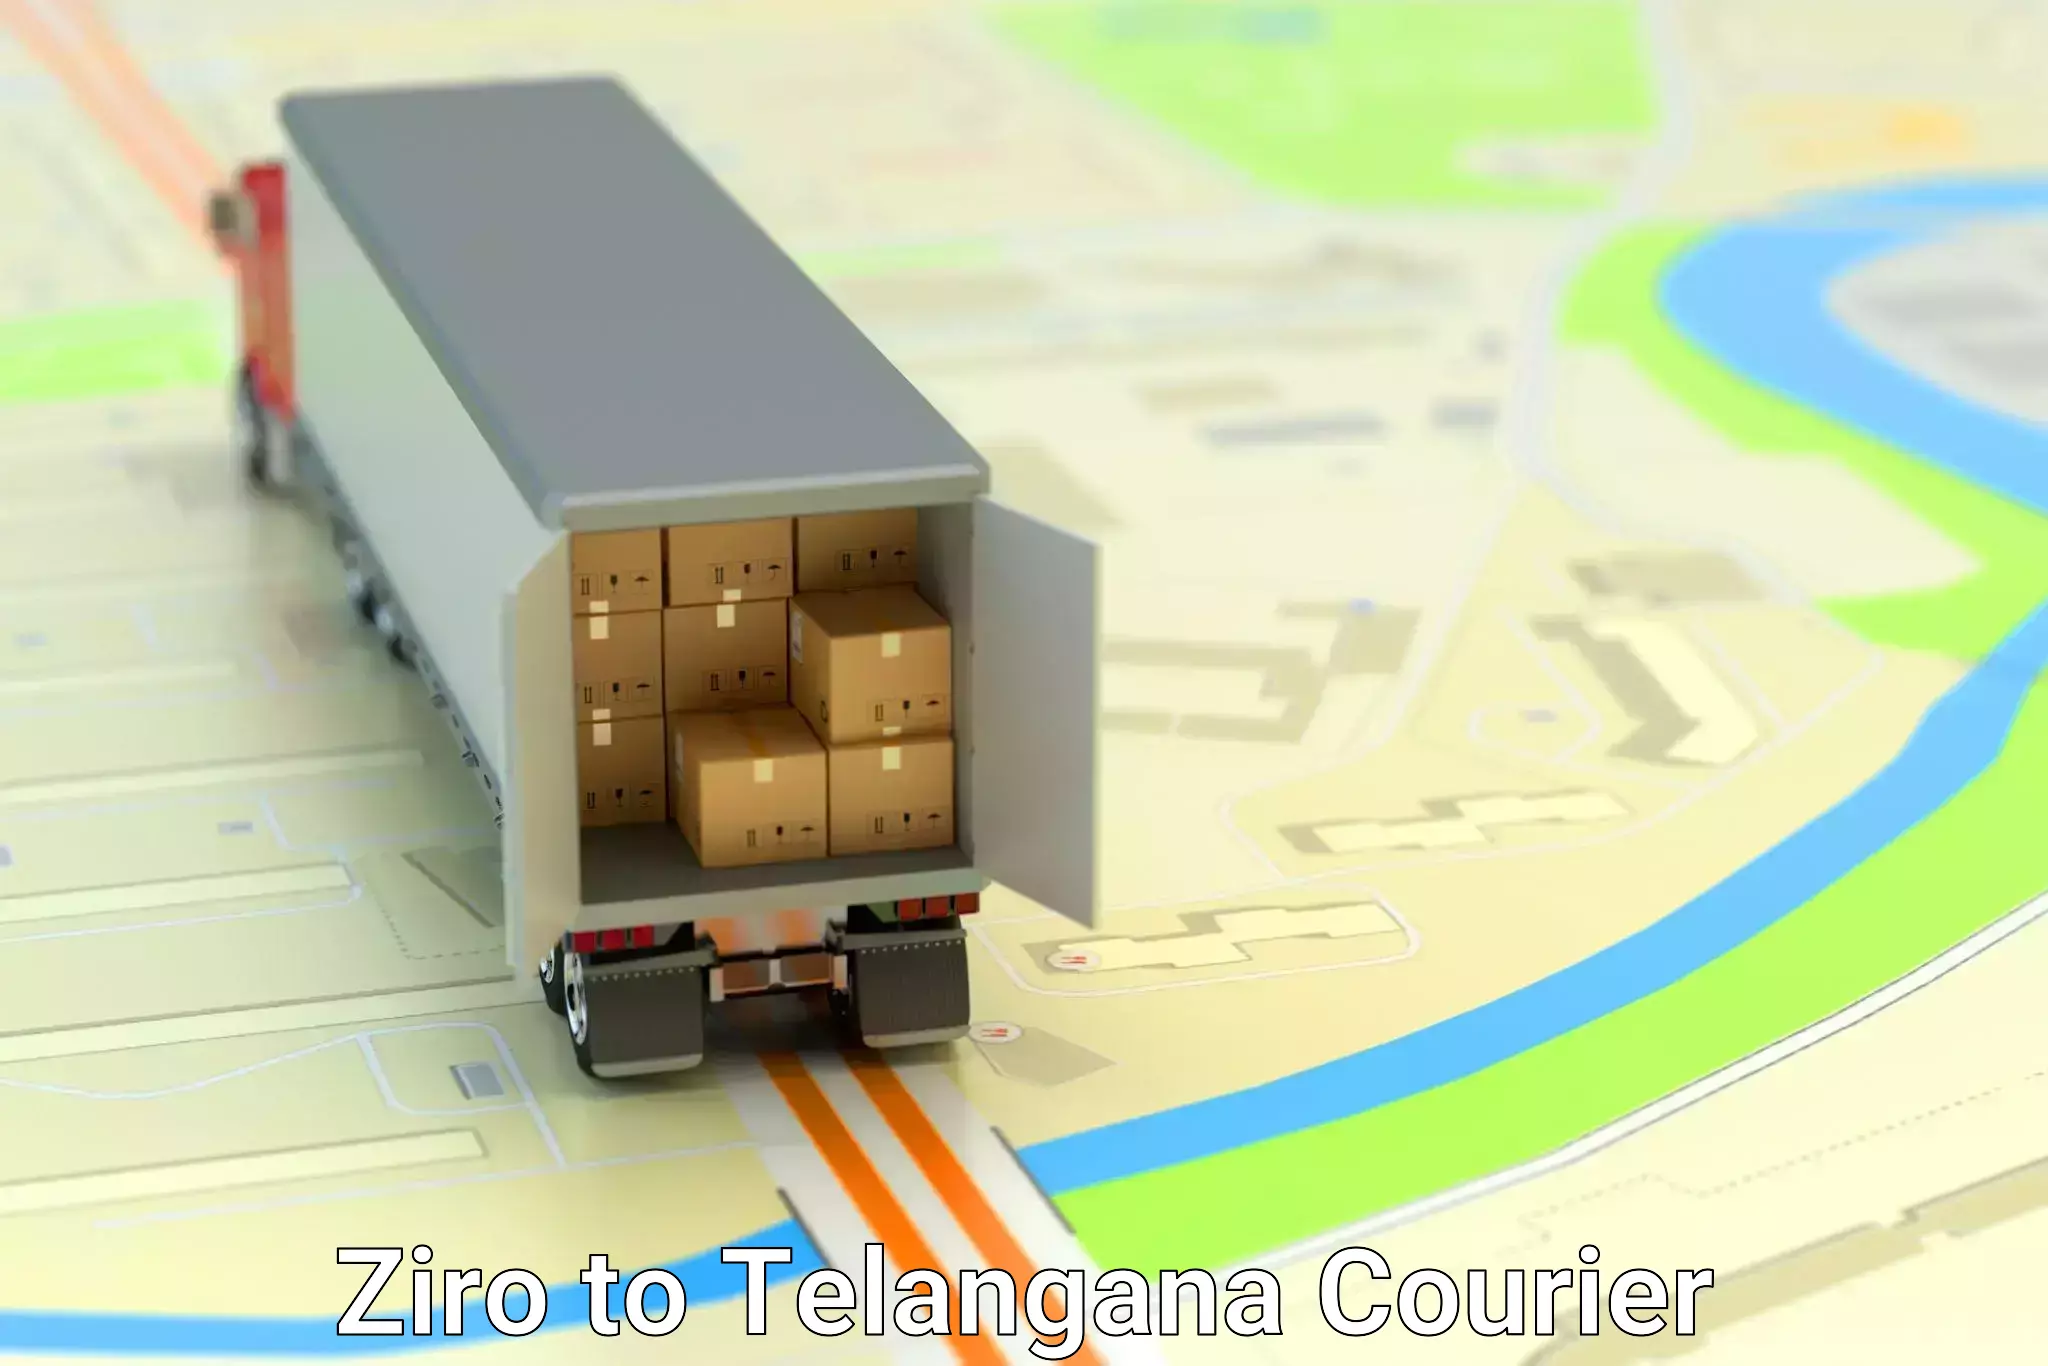 Local courier options Ziro to Telangana